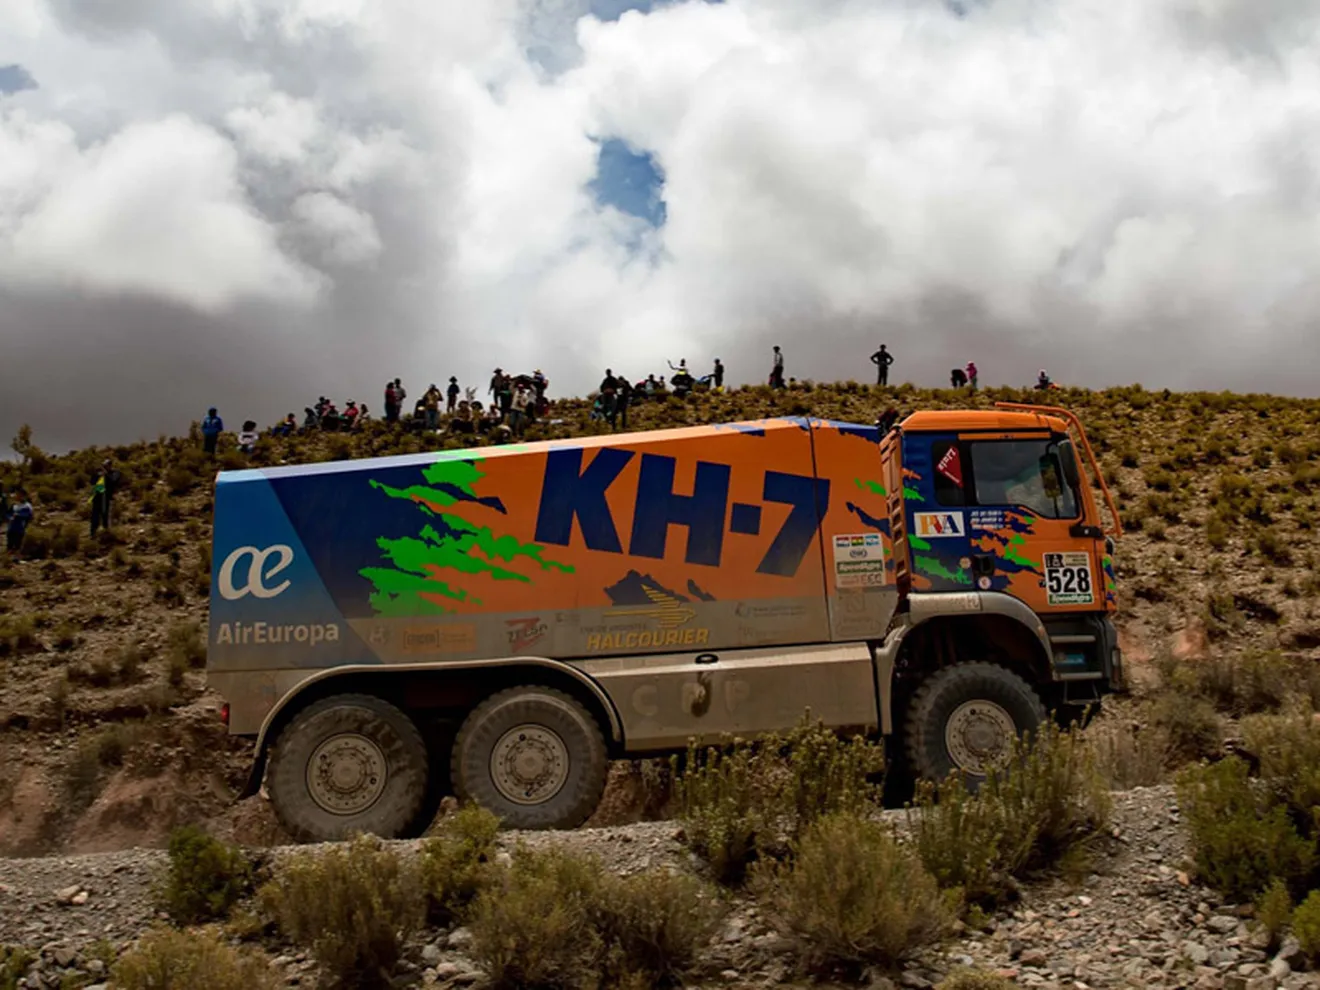 Dakar 2017, día de descanso: El KH-7 Epsilon Team está vivo